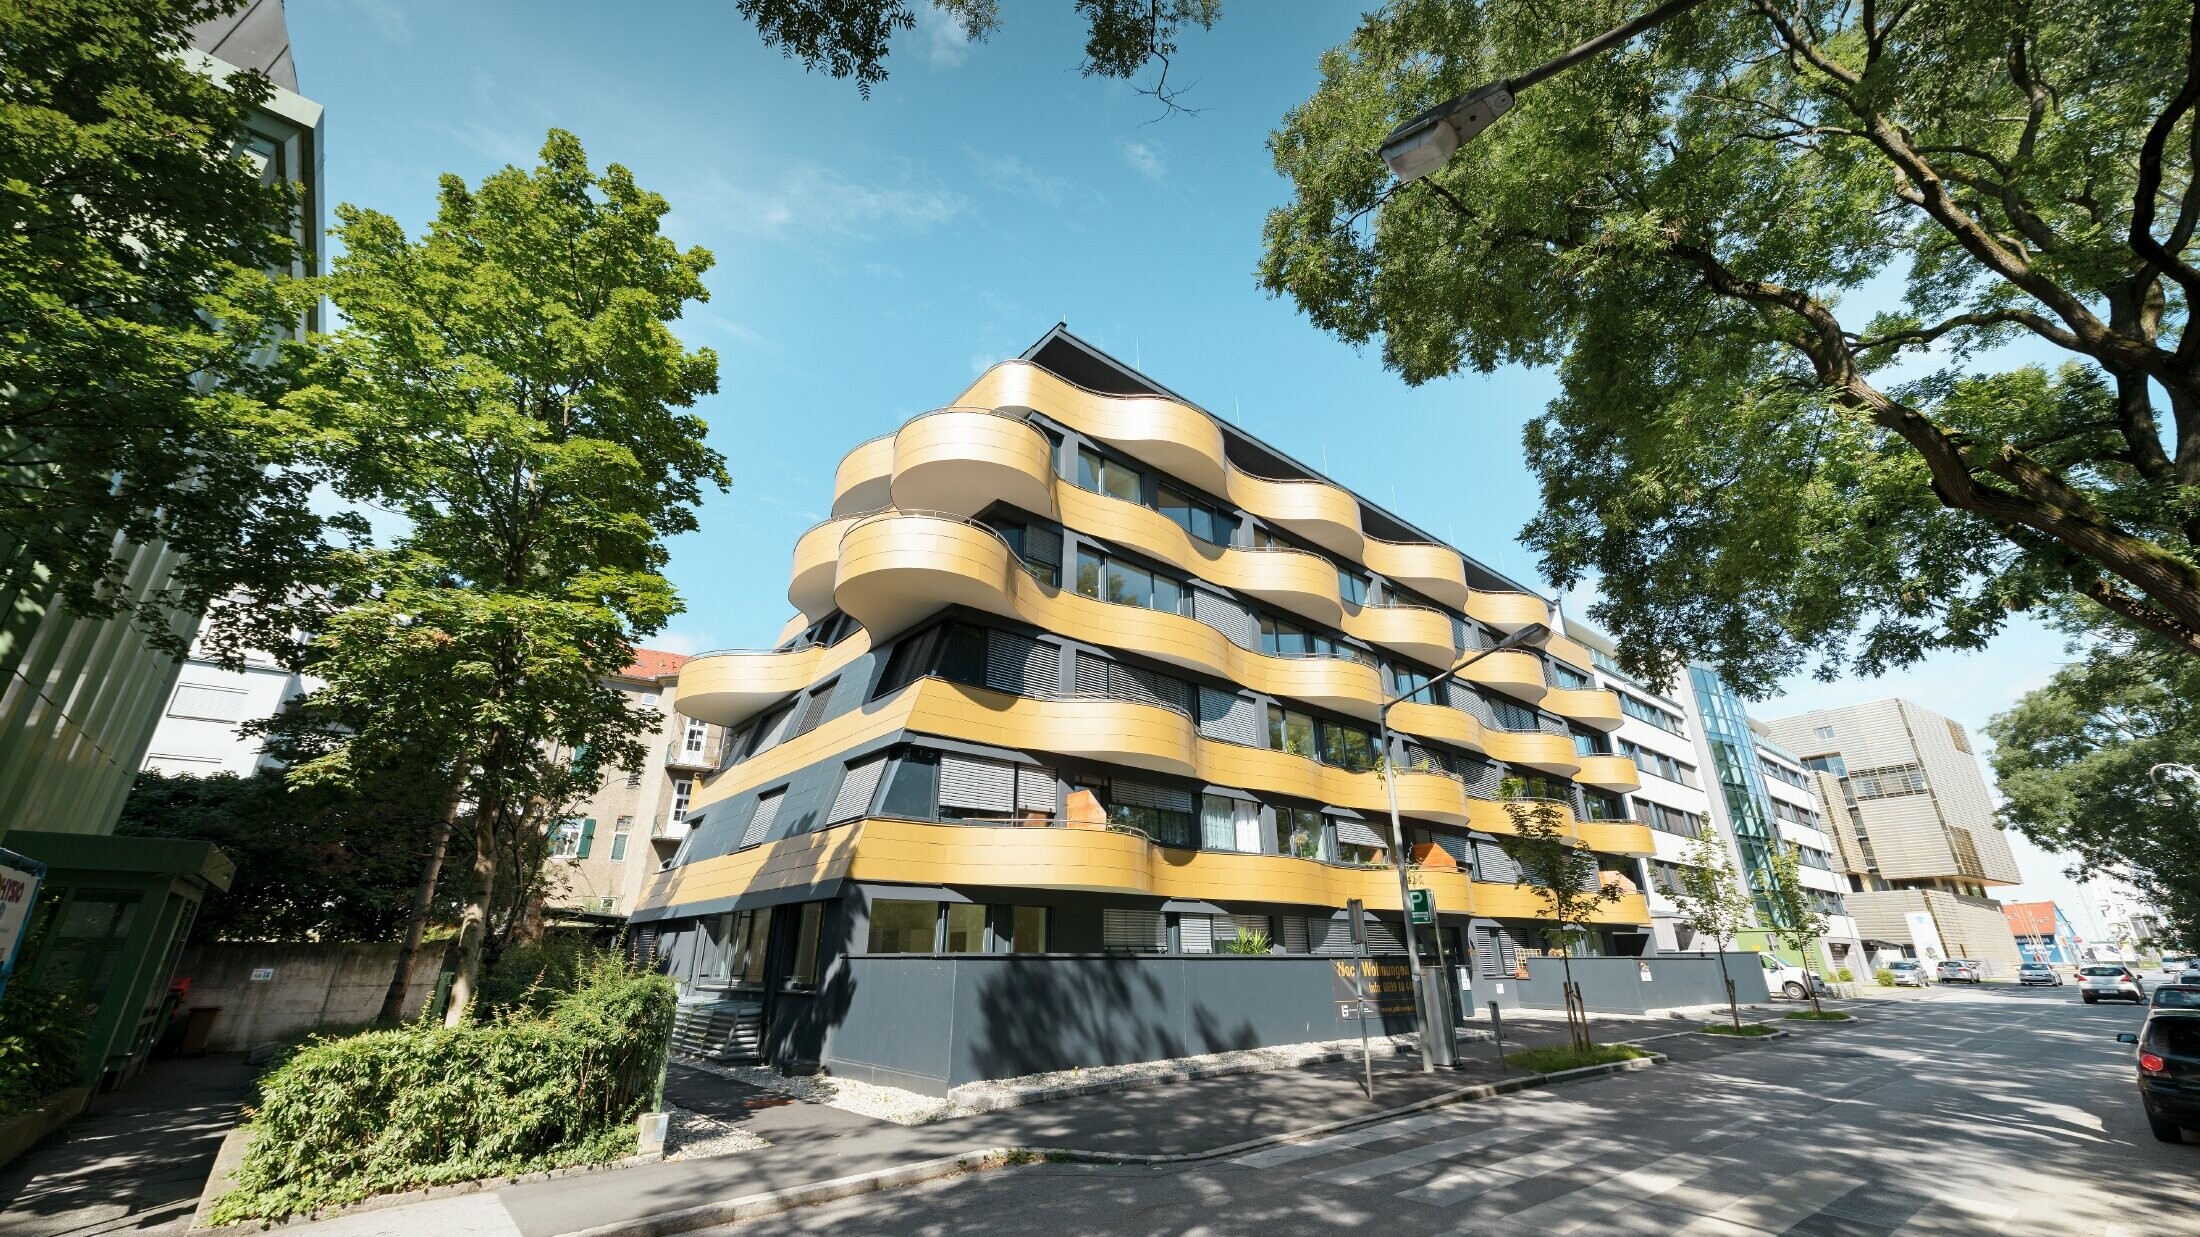 Obytný komplex "Golden Wave" neboli zlatá vlna v rakouském Grazu s hliníkovou kompozitní deskou PREFABOND ve zlaté barvě. Balkony zde byly zaobleny do vln.